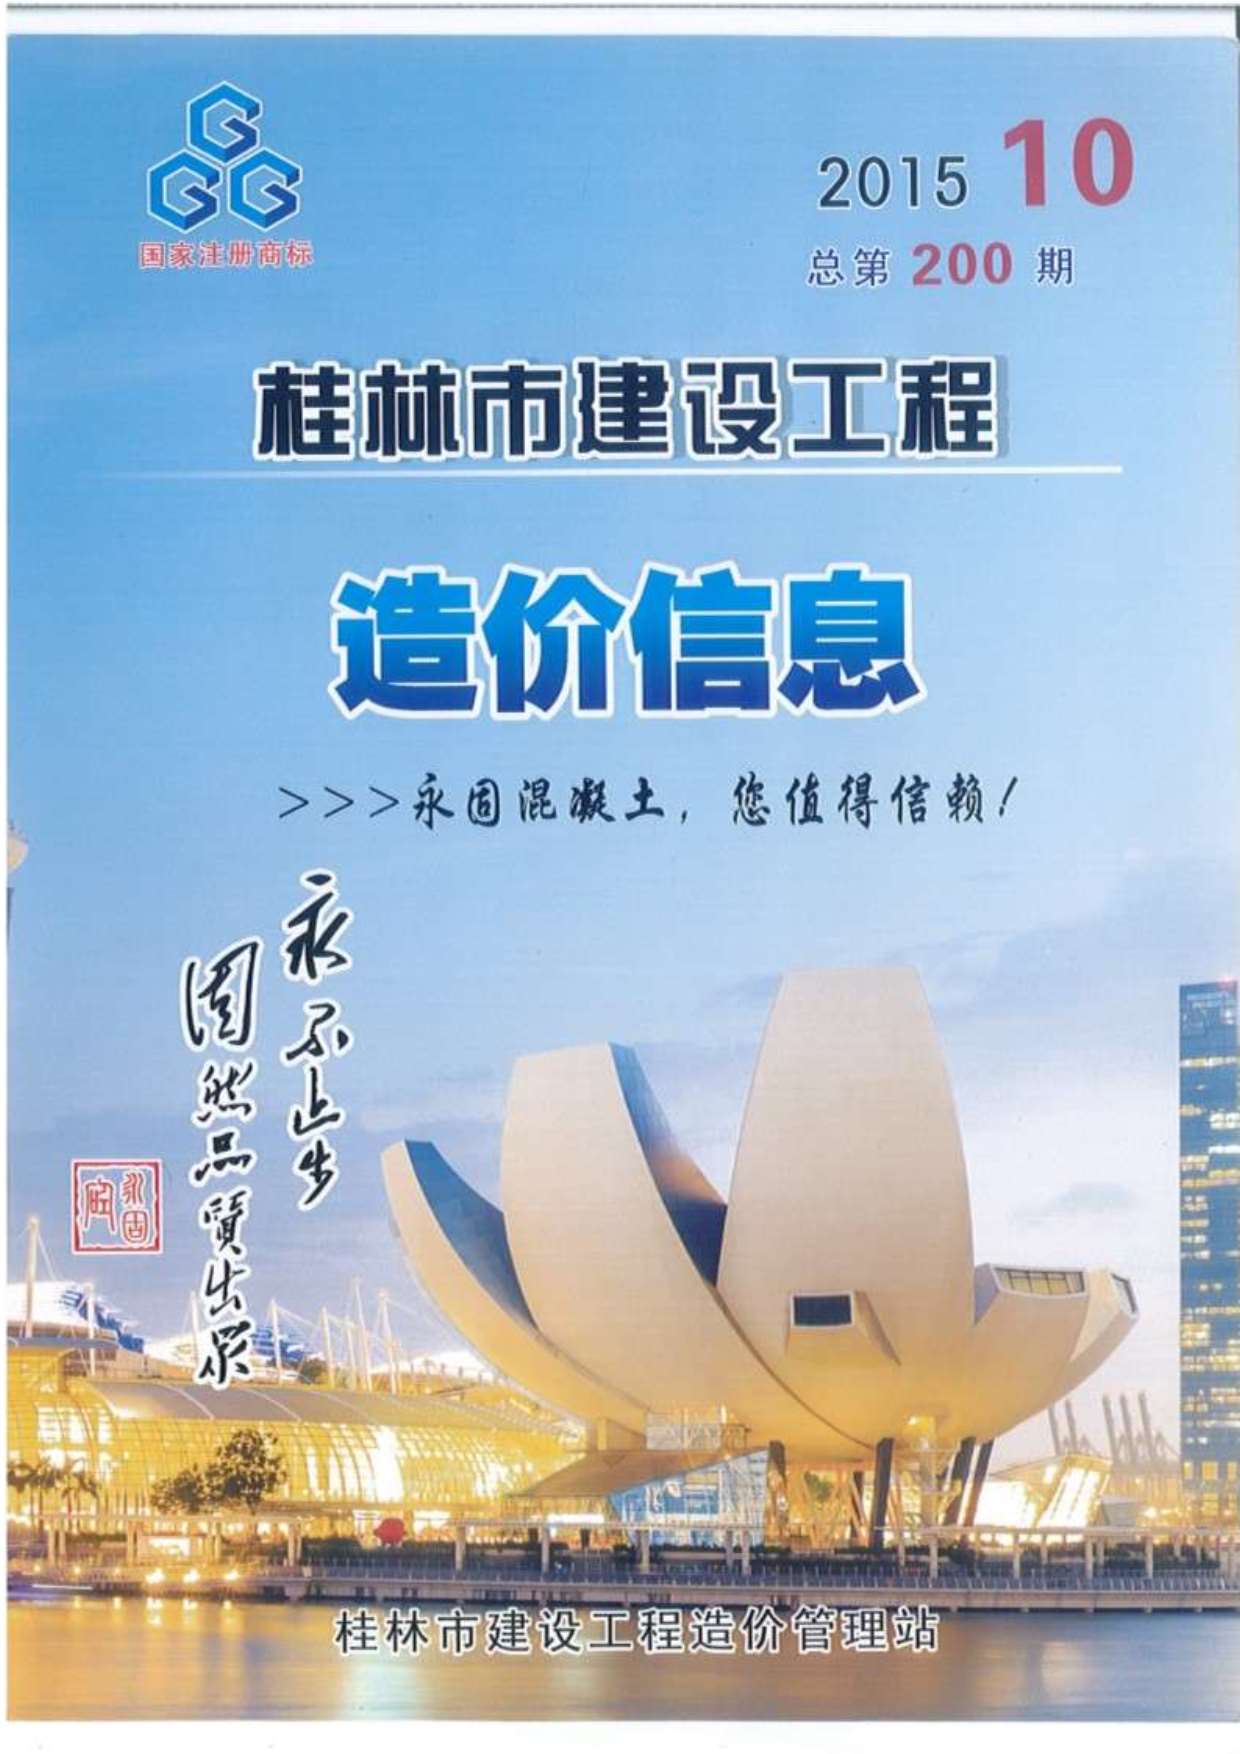 桂林市2015年10月工程信息价_桂林市信息价期刊PDF扫描件电子版